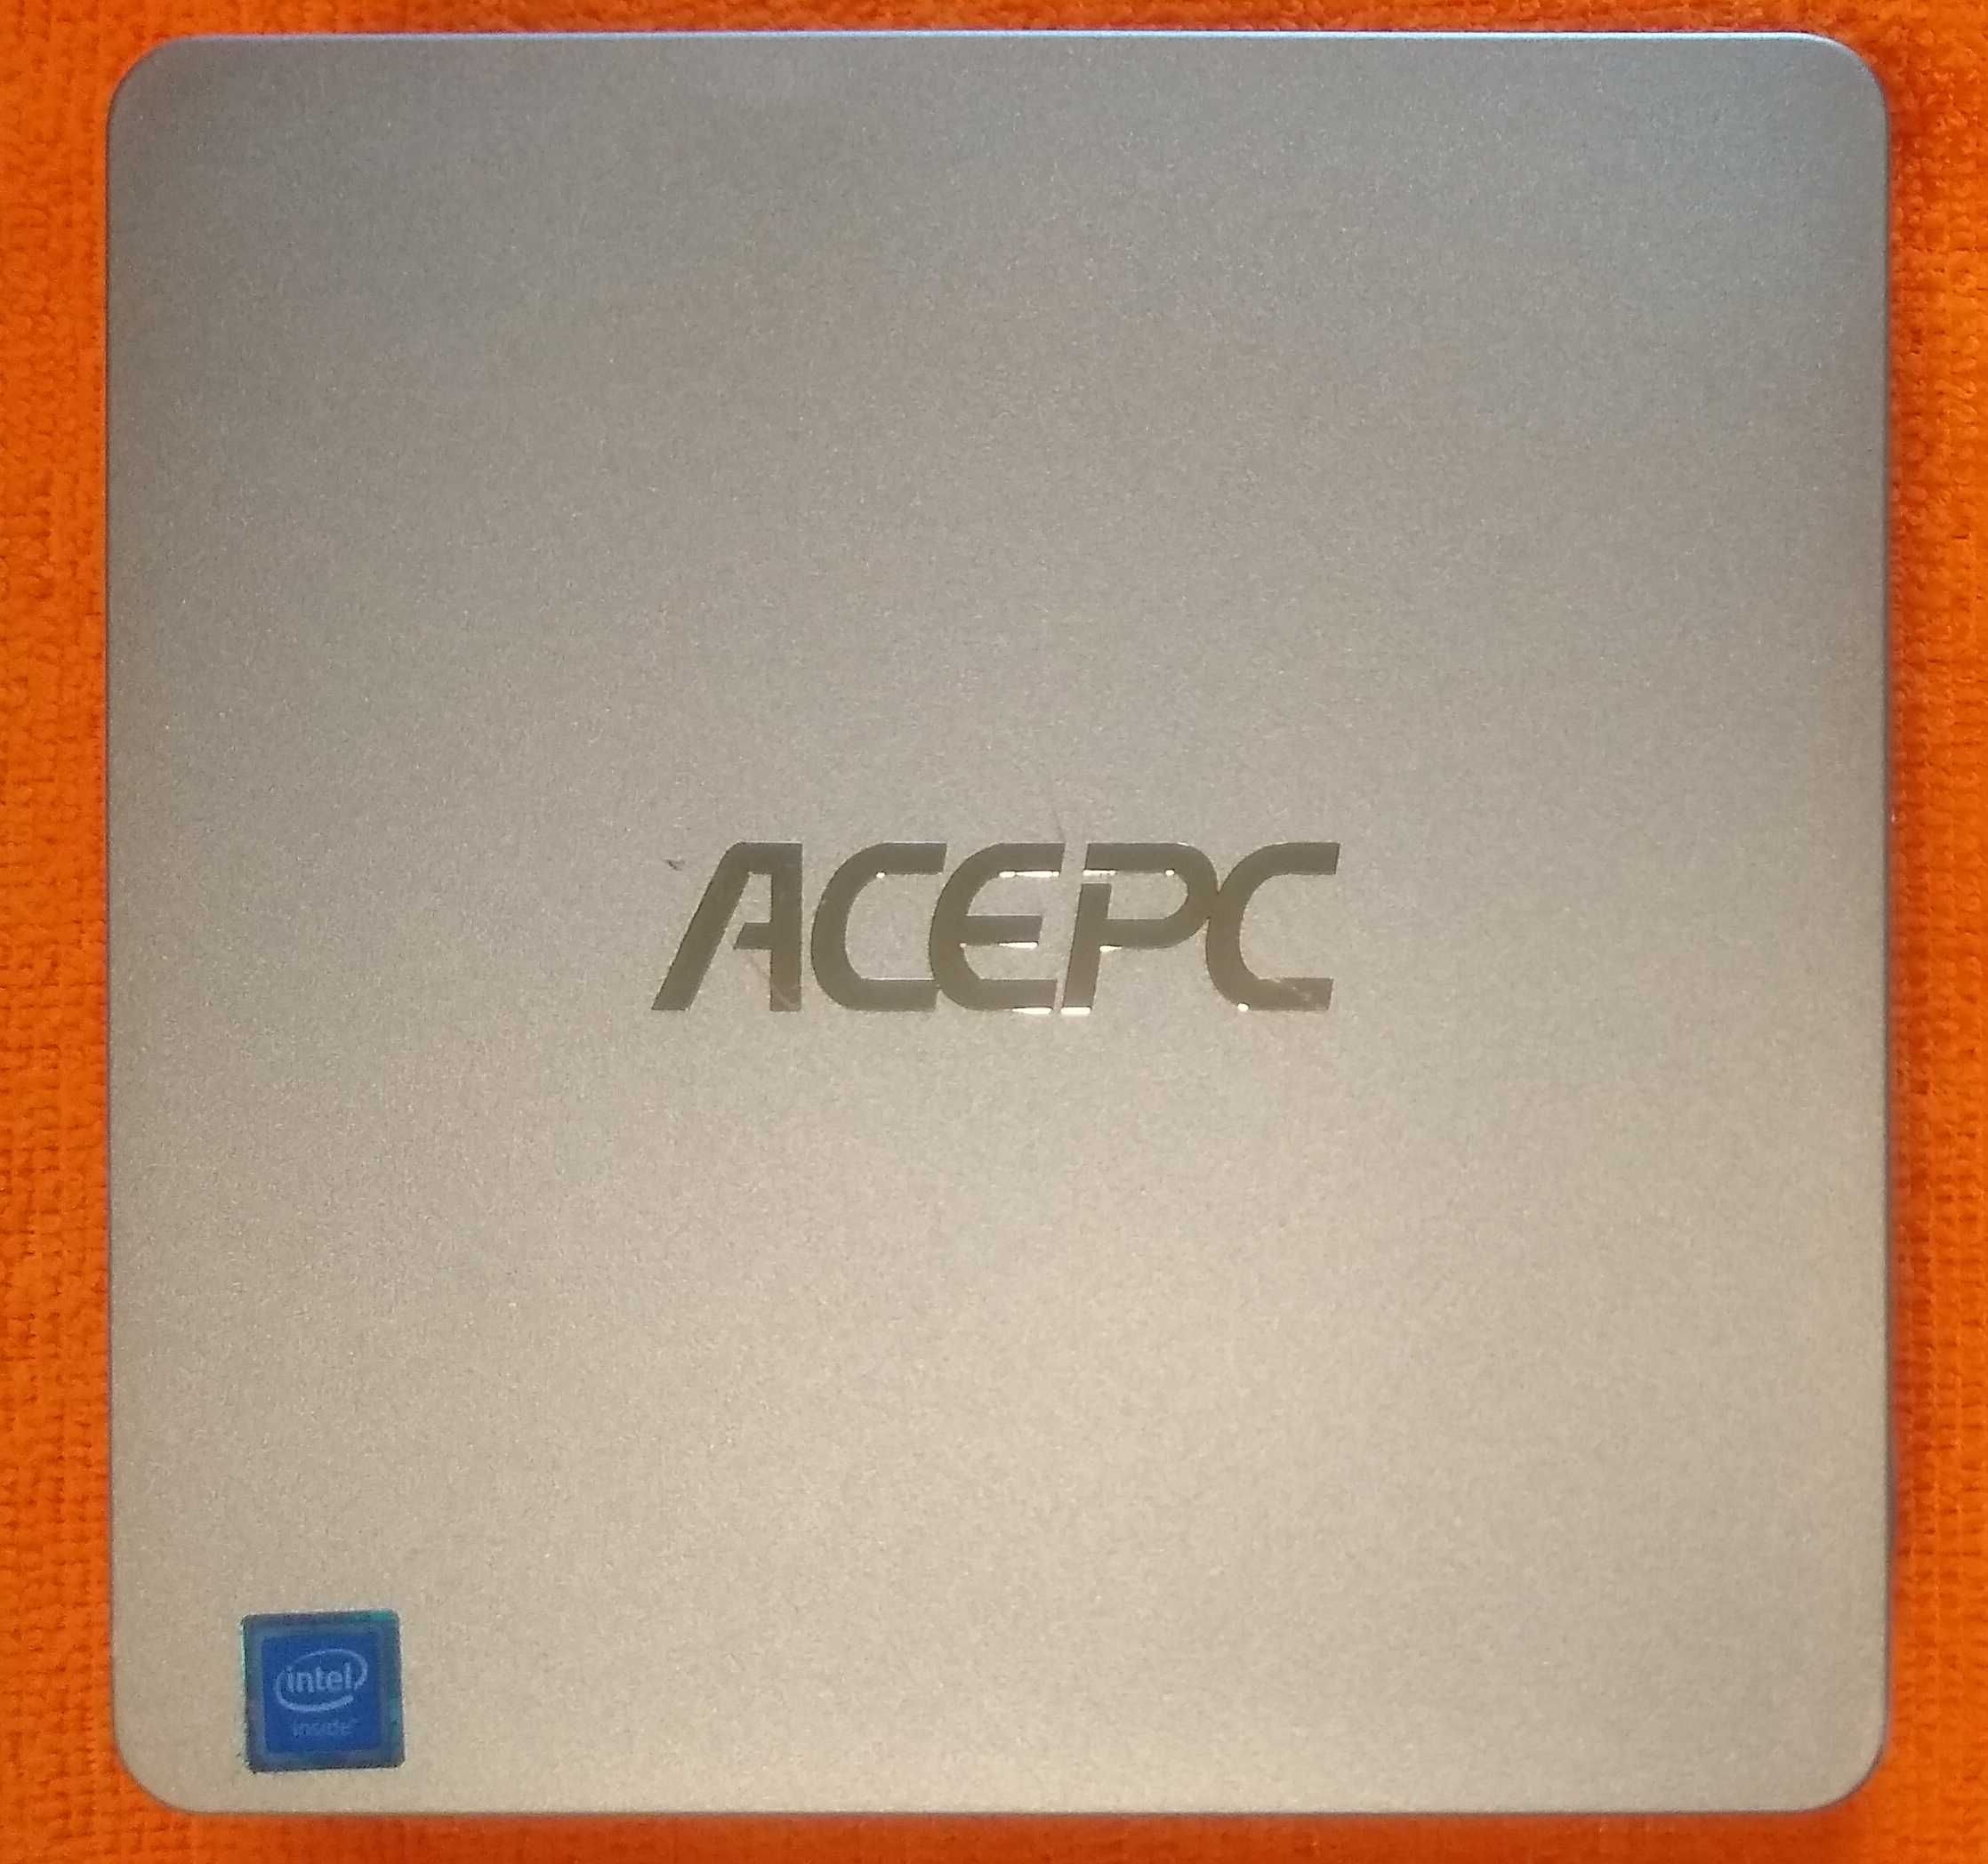 Мини-ПК ACEPC T11•Intel Atom x5-Z8350•8Gb DDR3/128Gb eMMC•новый